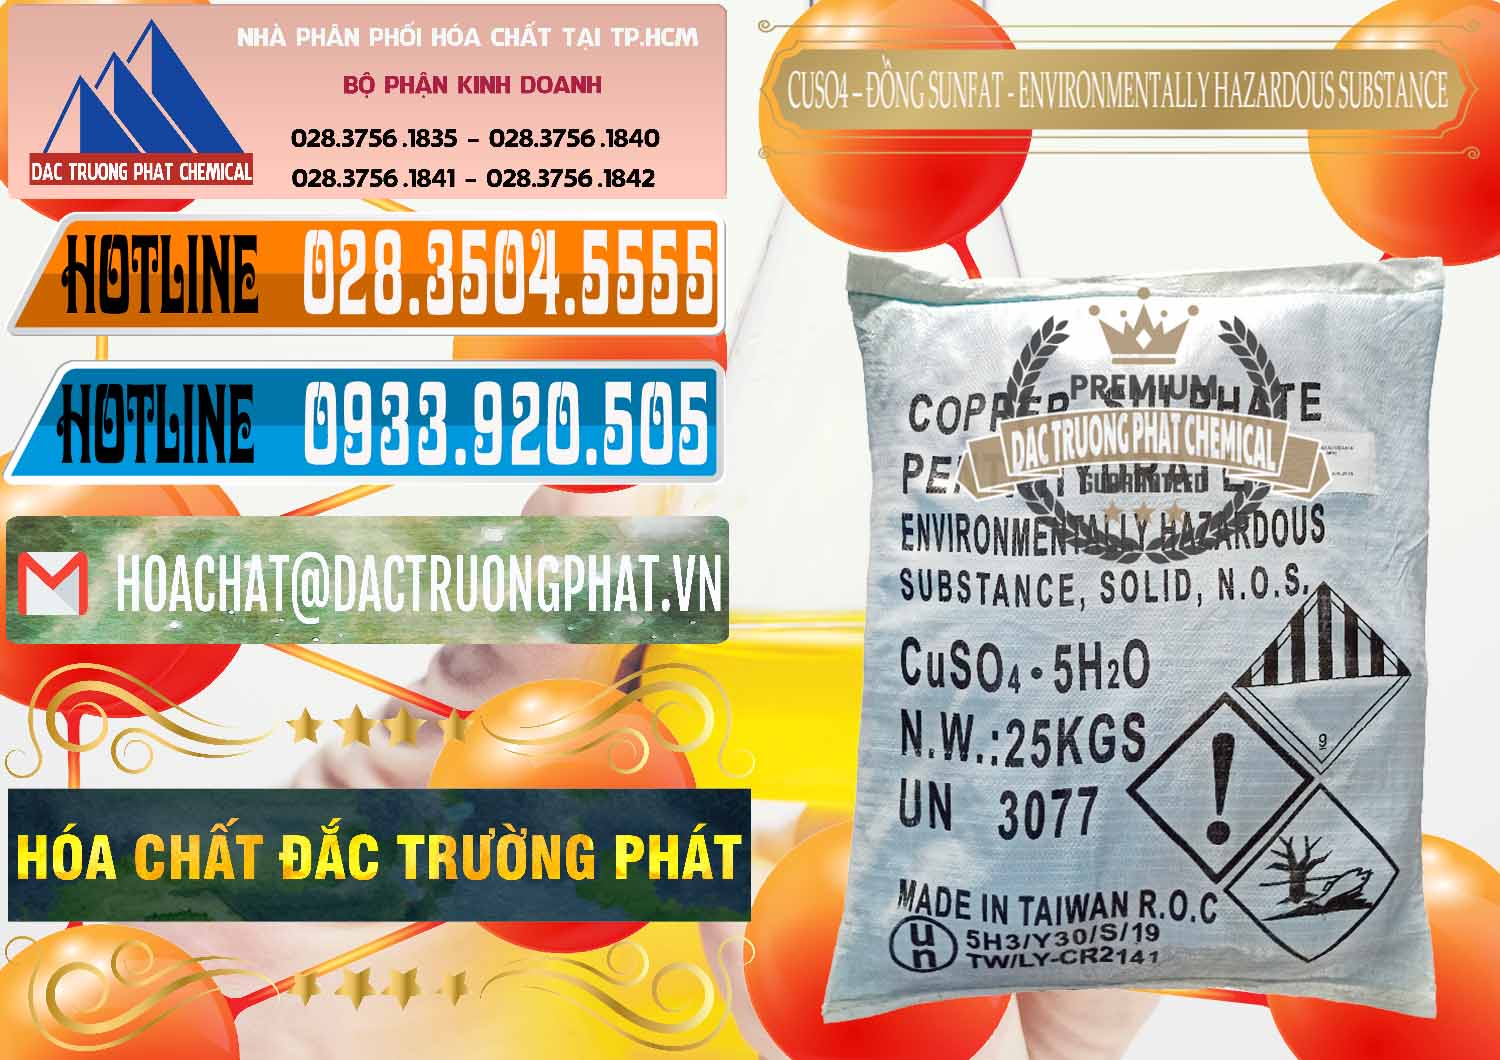 Nơi chuyên cung ứng - bán CuSO4 – Đồng Sunfat Đài Loan Taiwan - 0059 - Đơn vị chuyên kinh doanh - cung cấp hóa chất tại TP.HCM - stmp.net